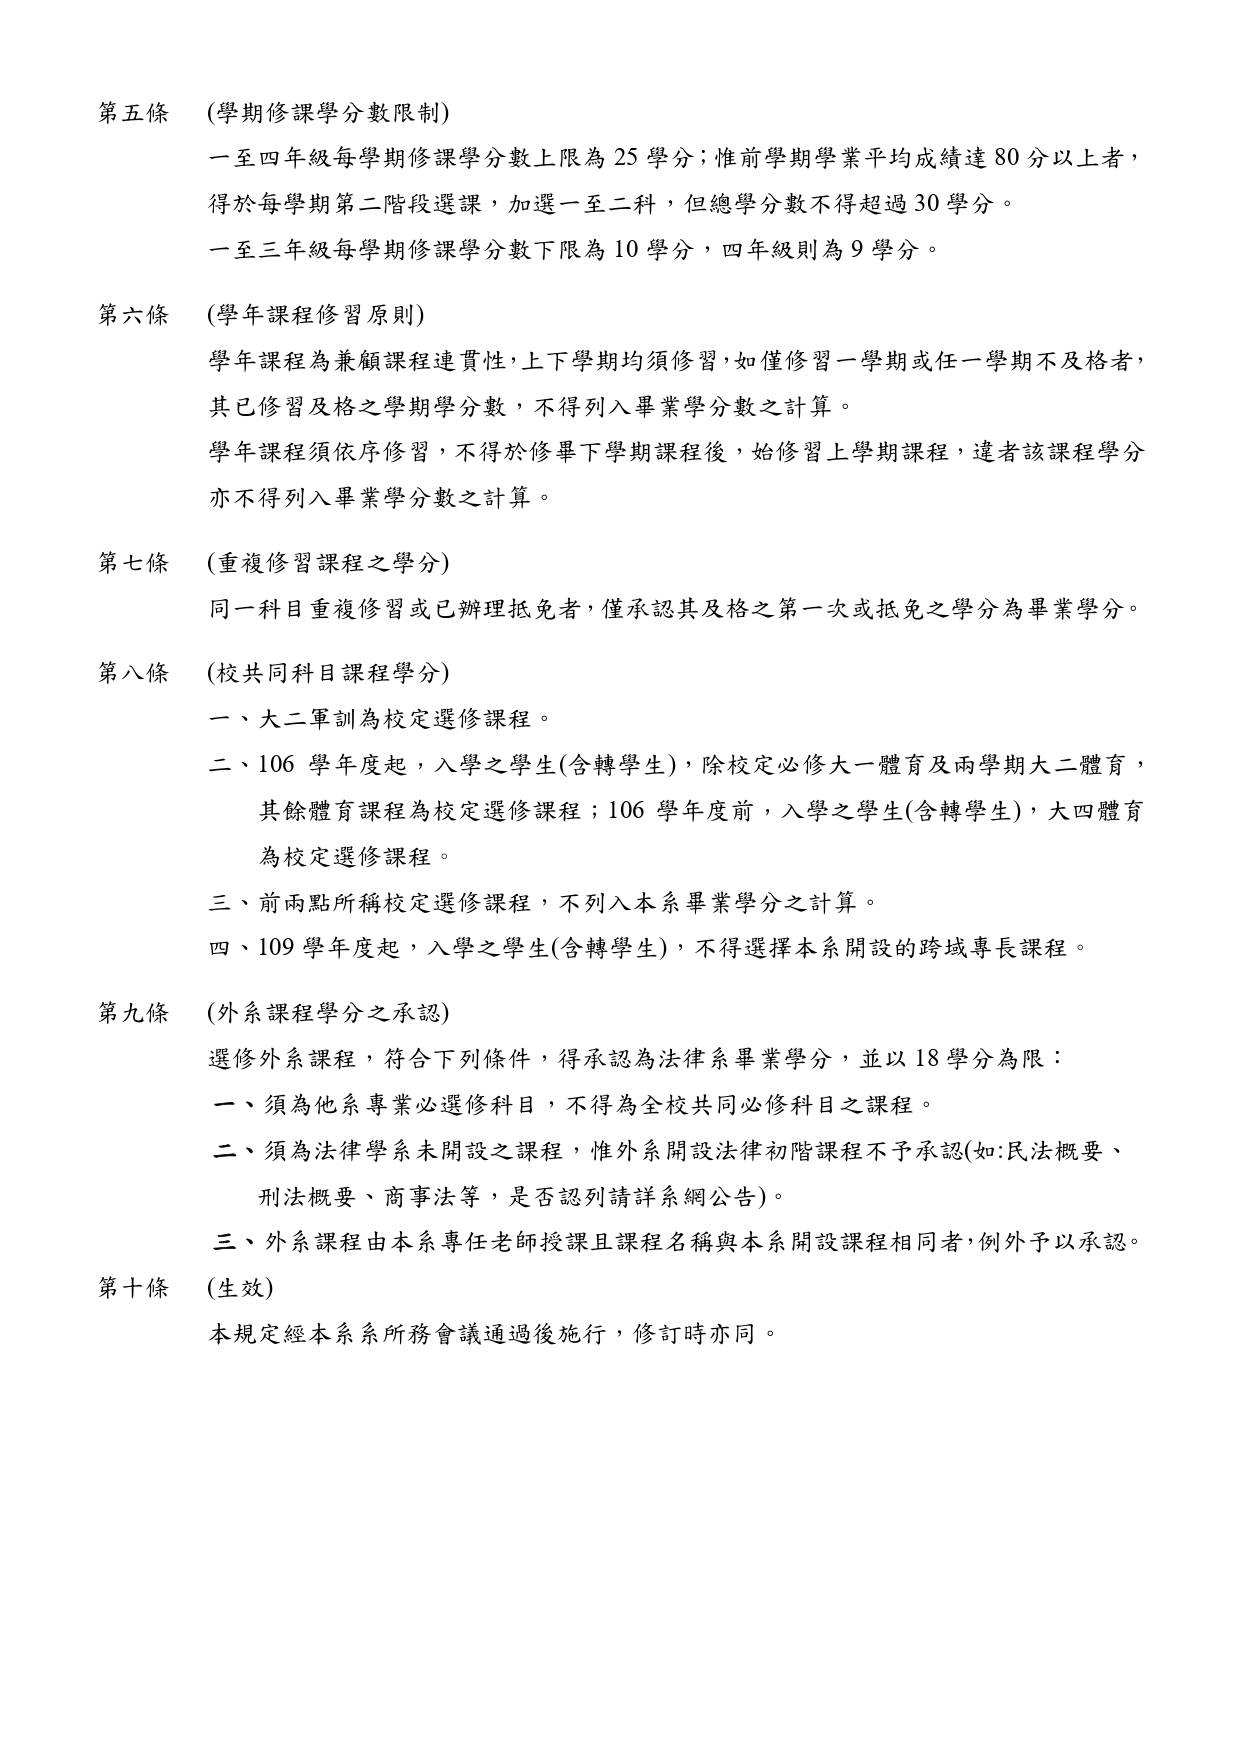 中國文化大學法律學系選課規定112.05.24 page 0002